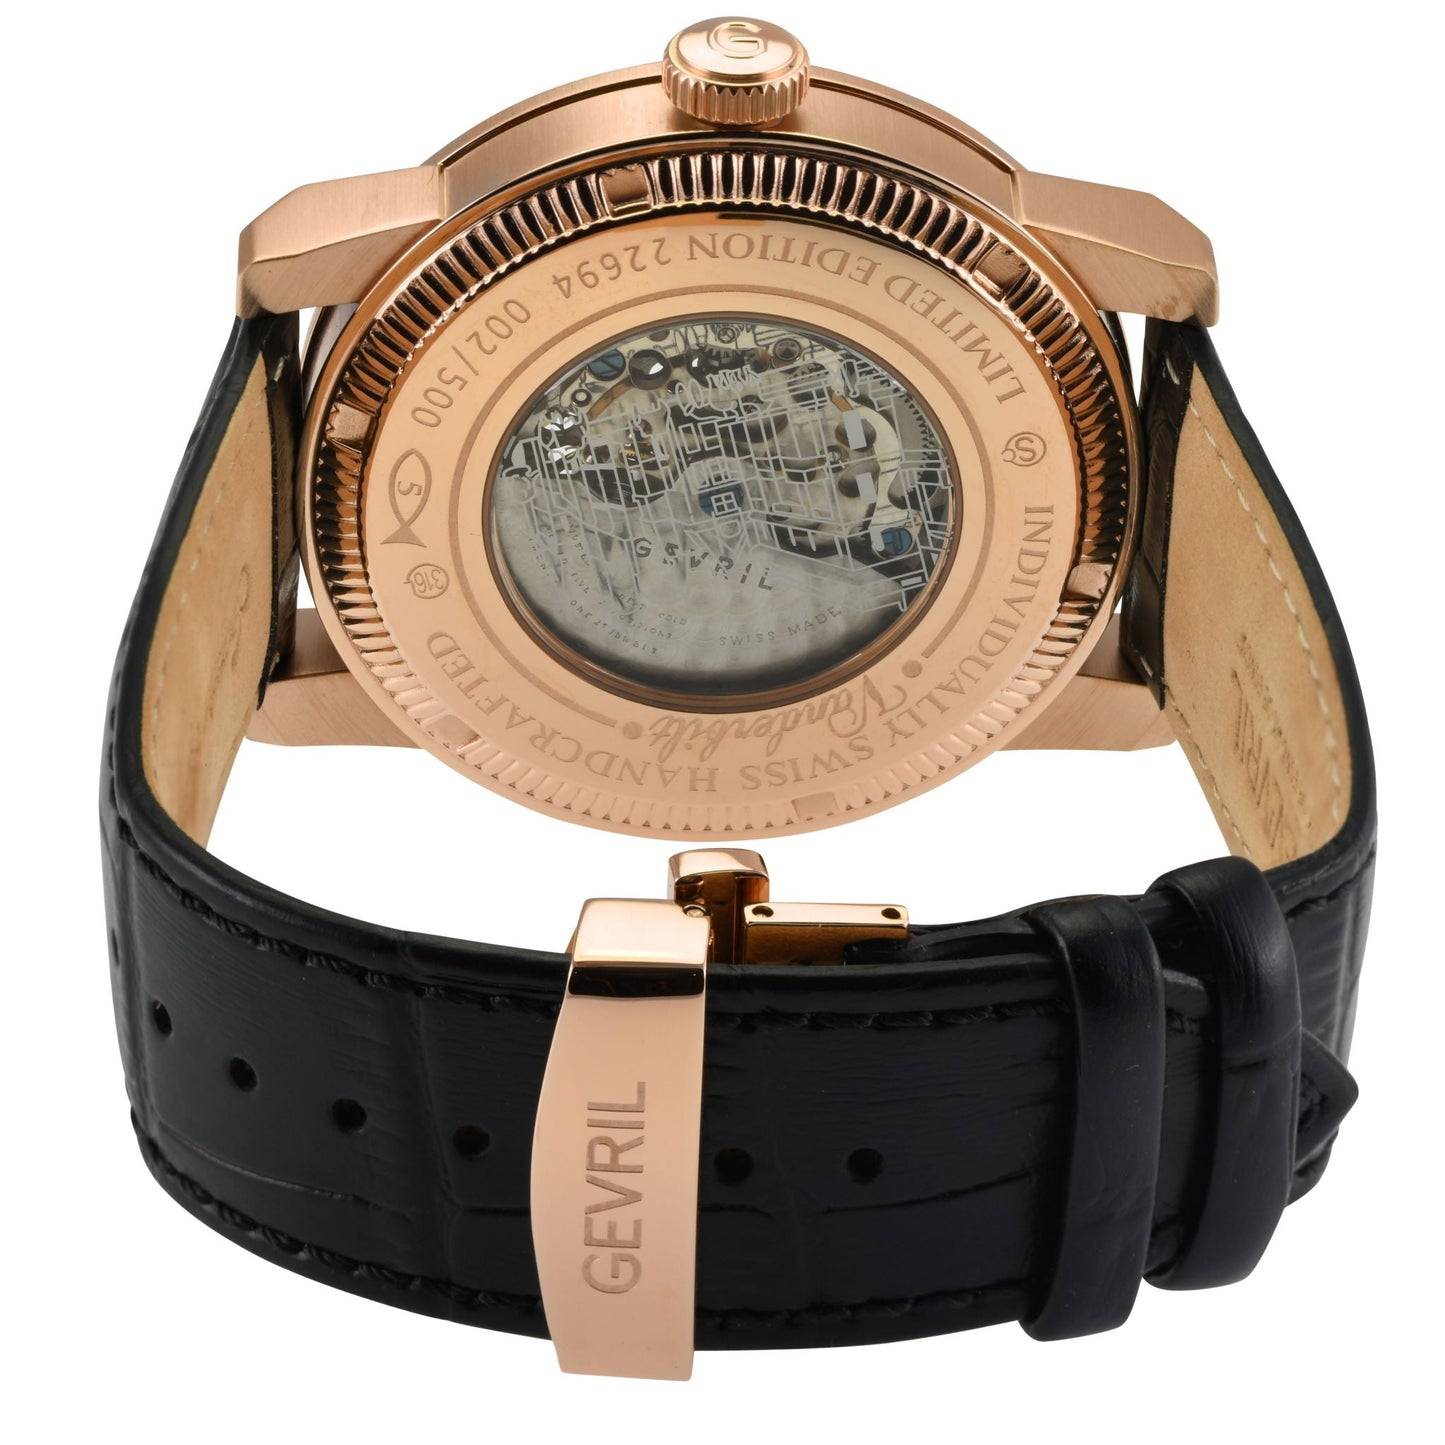 Gevril-Luxury-Swiss-Watches-Gevril Vanderbilt Open Heart-22694